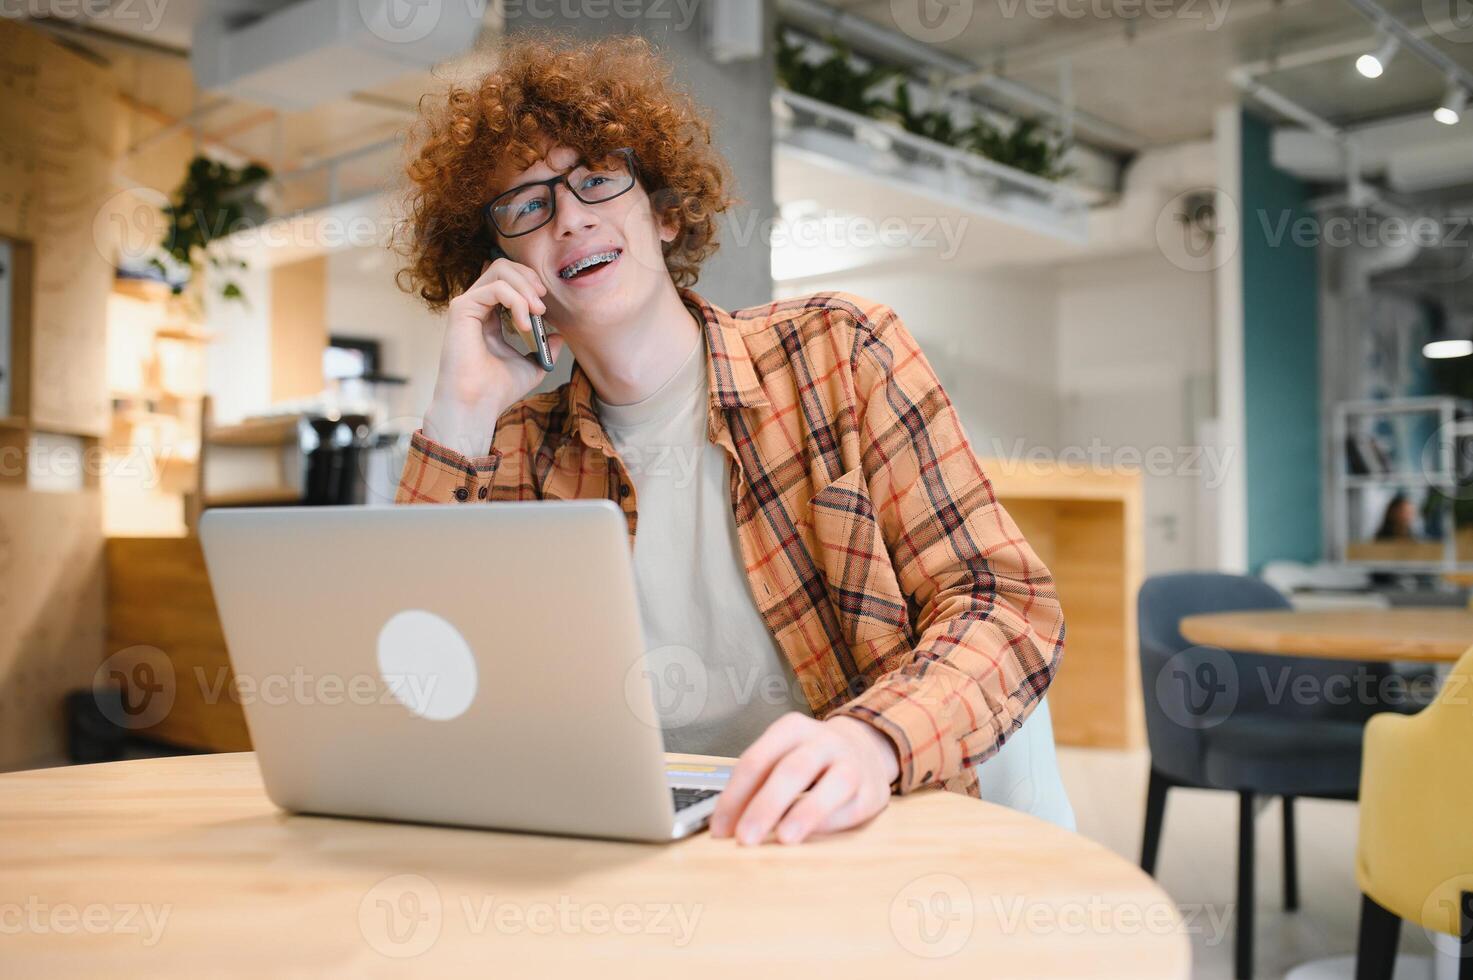 masculino programador vestir gafas para ojos proteccion mientras trabajando en Lanza libre vía ordenador portátil computadora, inteligente estudiante acecho tutorial en netbook foto